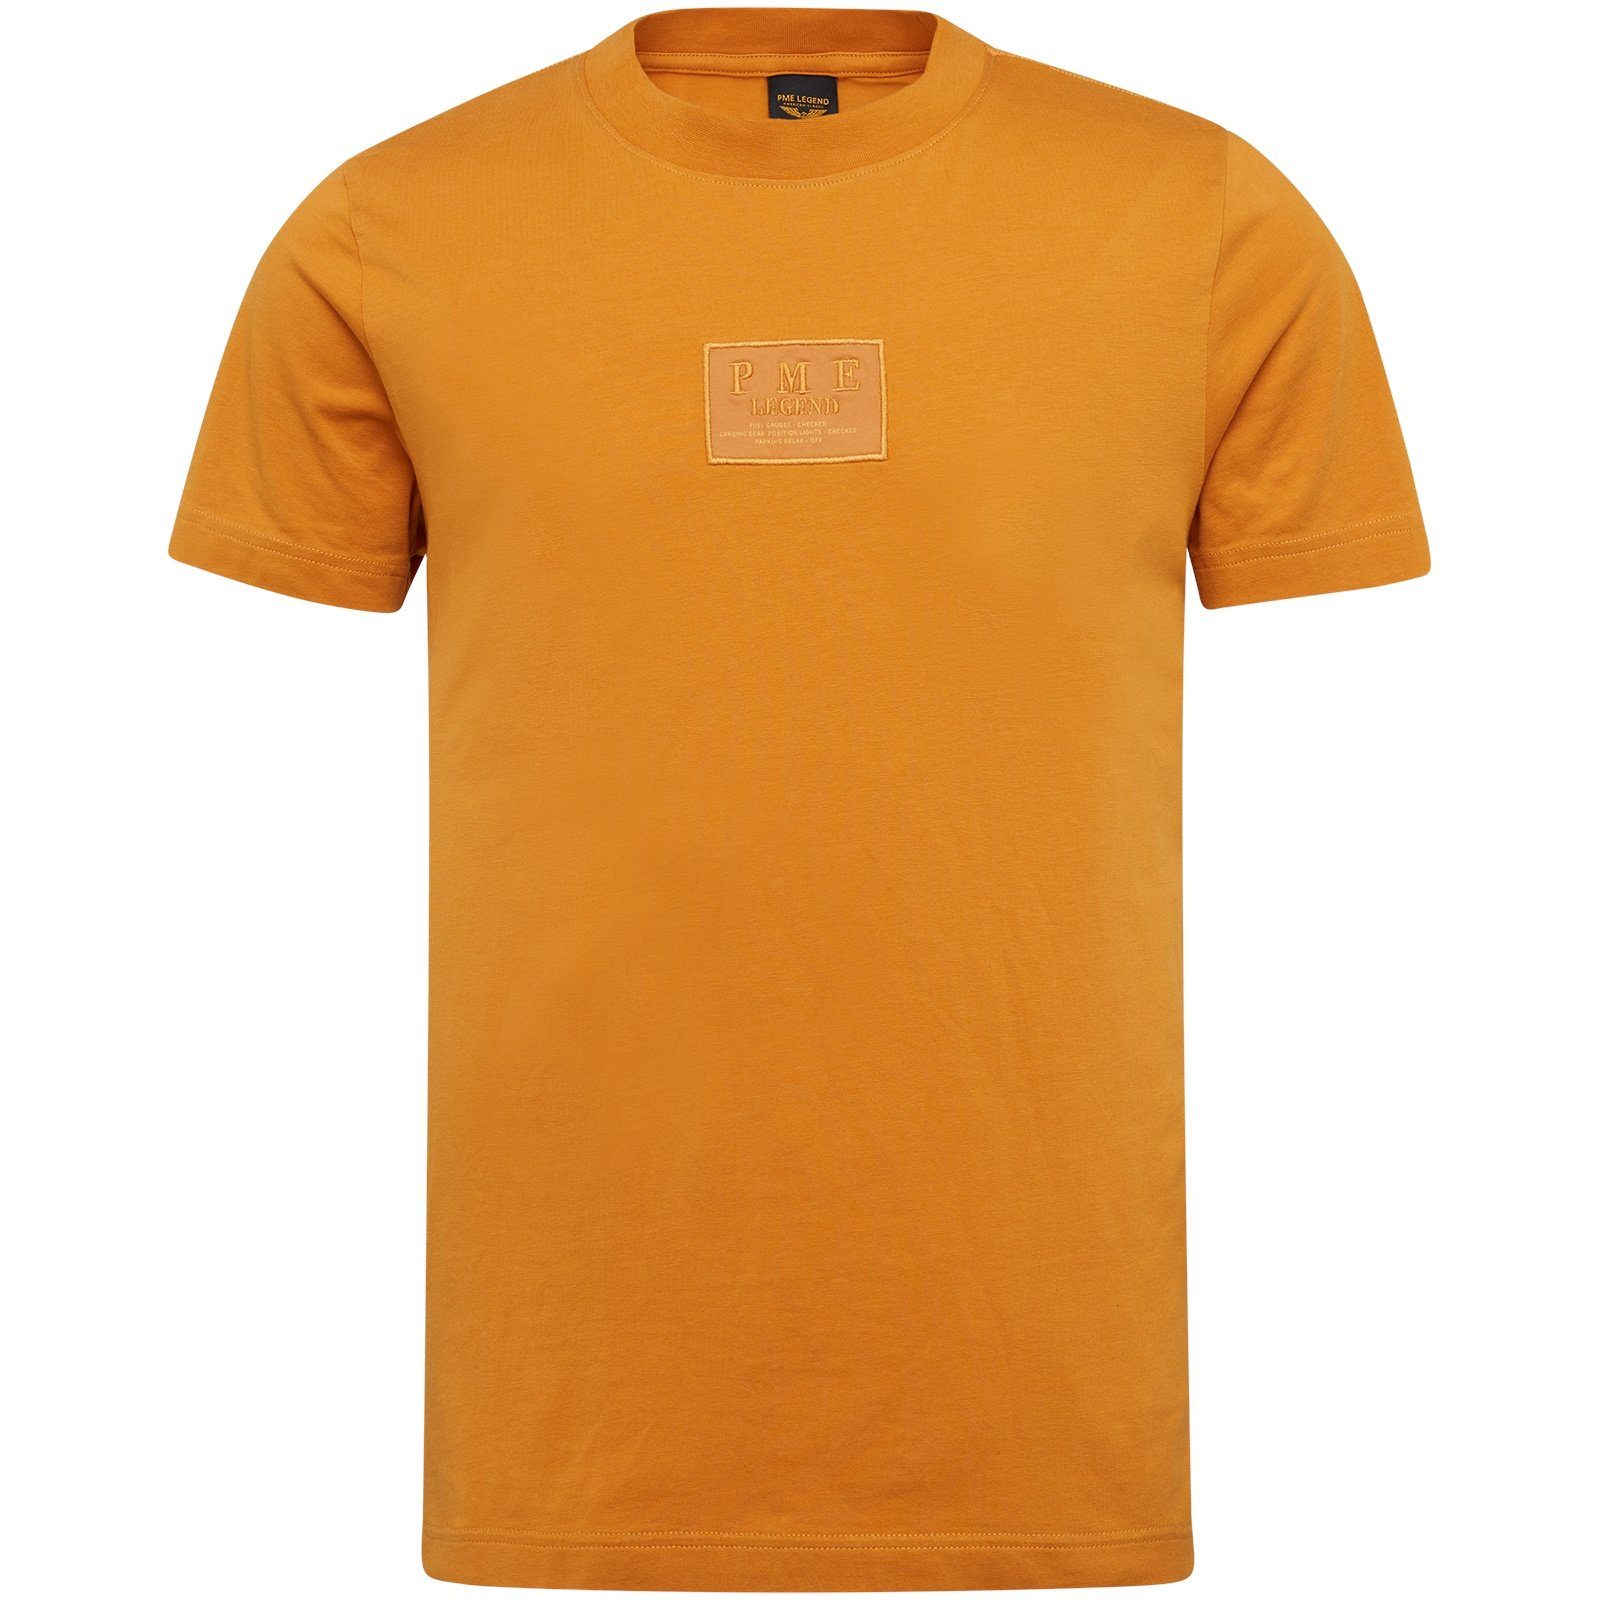 Oak elastane cotton jersey T-Shirt Short PME Golden LEGEND r-neck sleeve